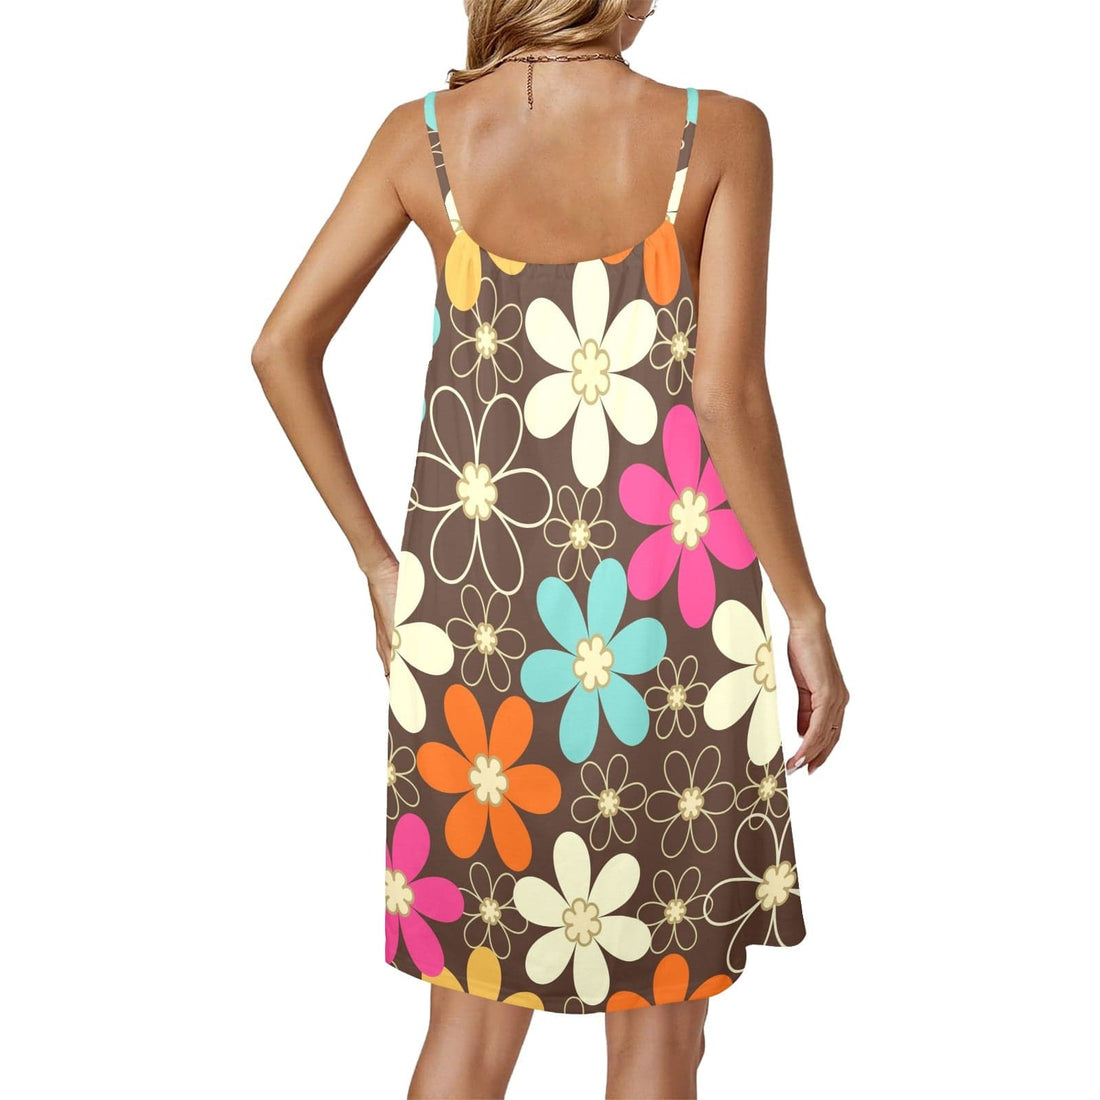 Kate McEnroe New York Retro Floral Drawstring Dress, 60s Sleeveless Summer Dress, Mid Century Mod Flower Power Party DressDressesD2924460